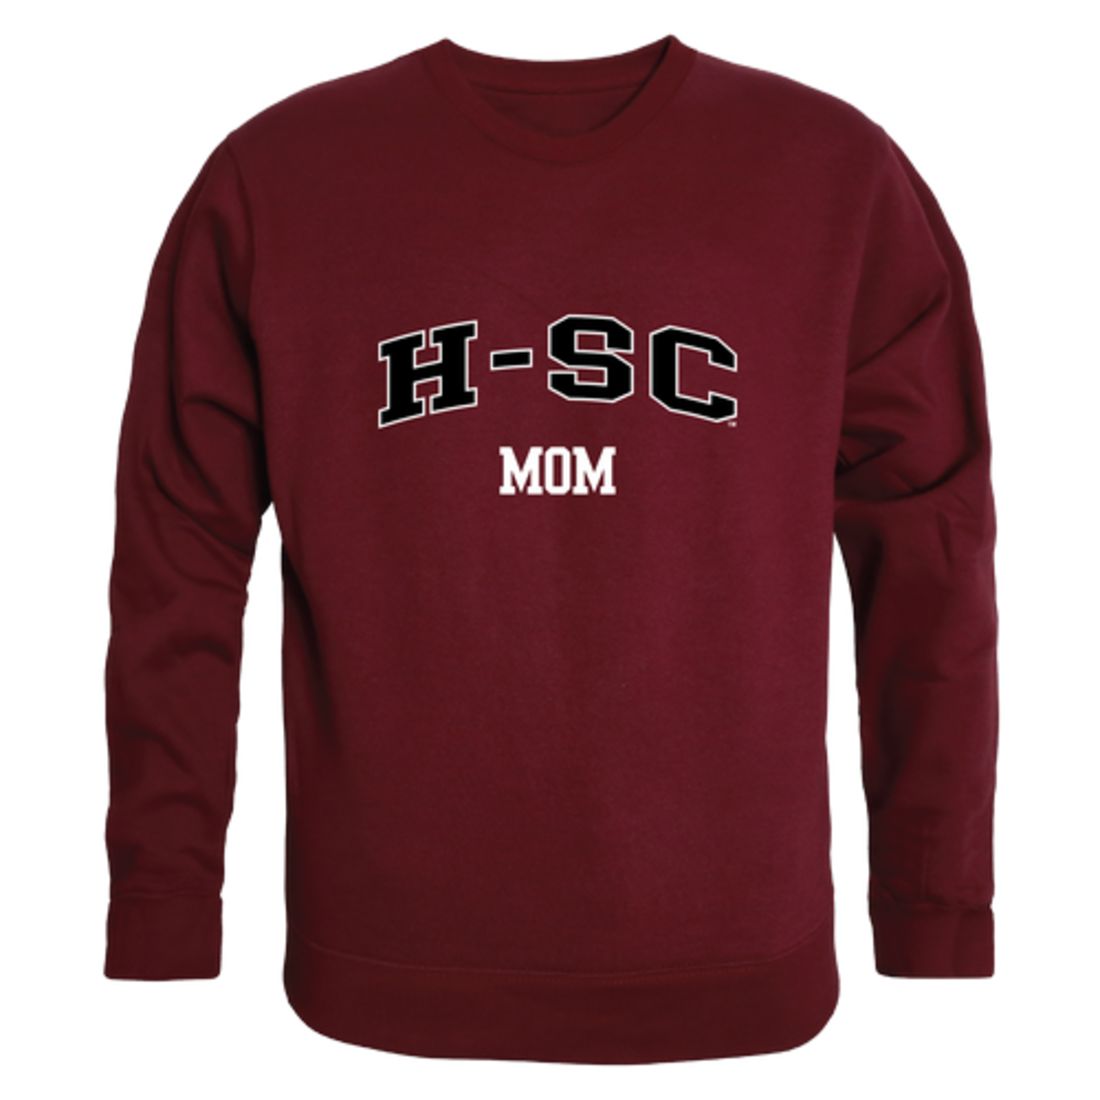 HSC Hampden-Sydney College Tigers Mom Fleece Crewneck Pullover Sweatshirt Heather Grey Small-Campus-Wardrobe